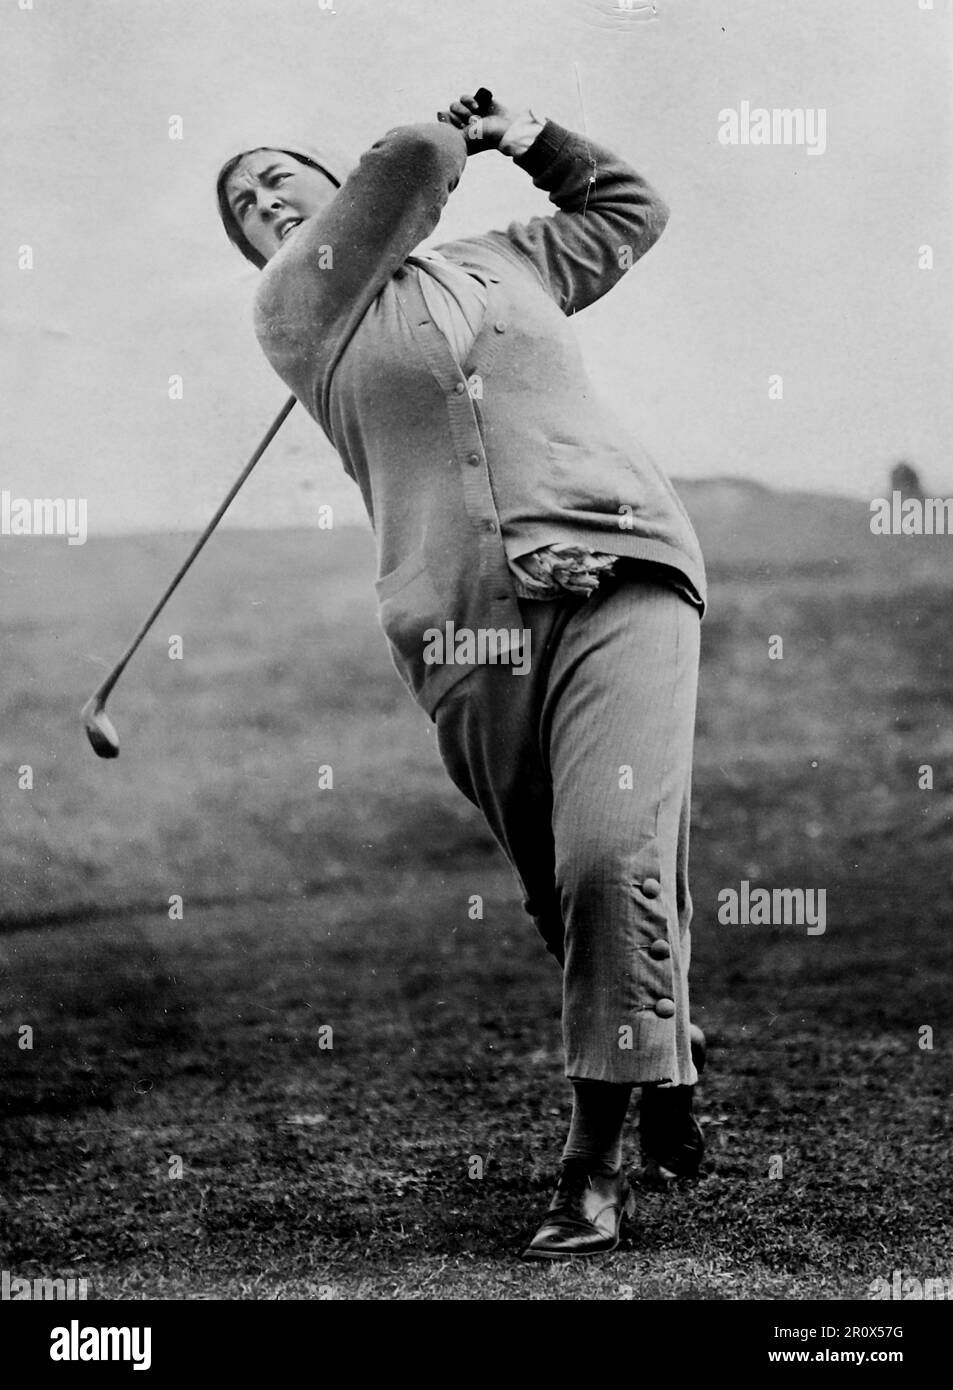 Mlle Gladys Ravenscroft, finaliste au Championnat de golf amateur de Womans à Hunstanton (Norfolk, Angleterre). Non daté, c1912. La photo montre Gladys, sur le parcours, à mi-chemin. Banque D'Images